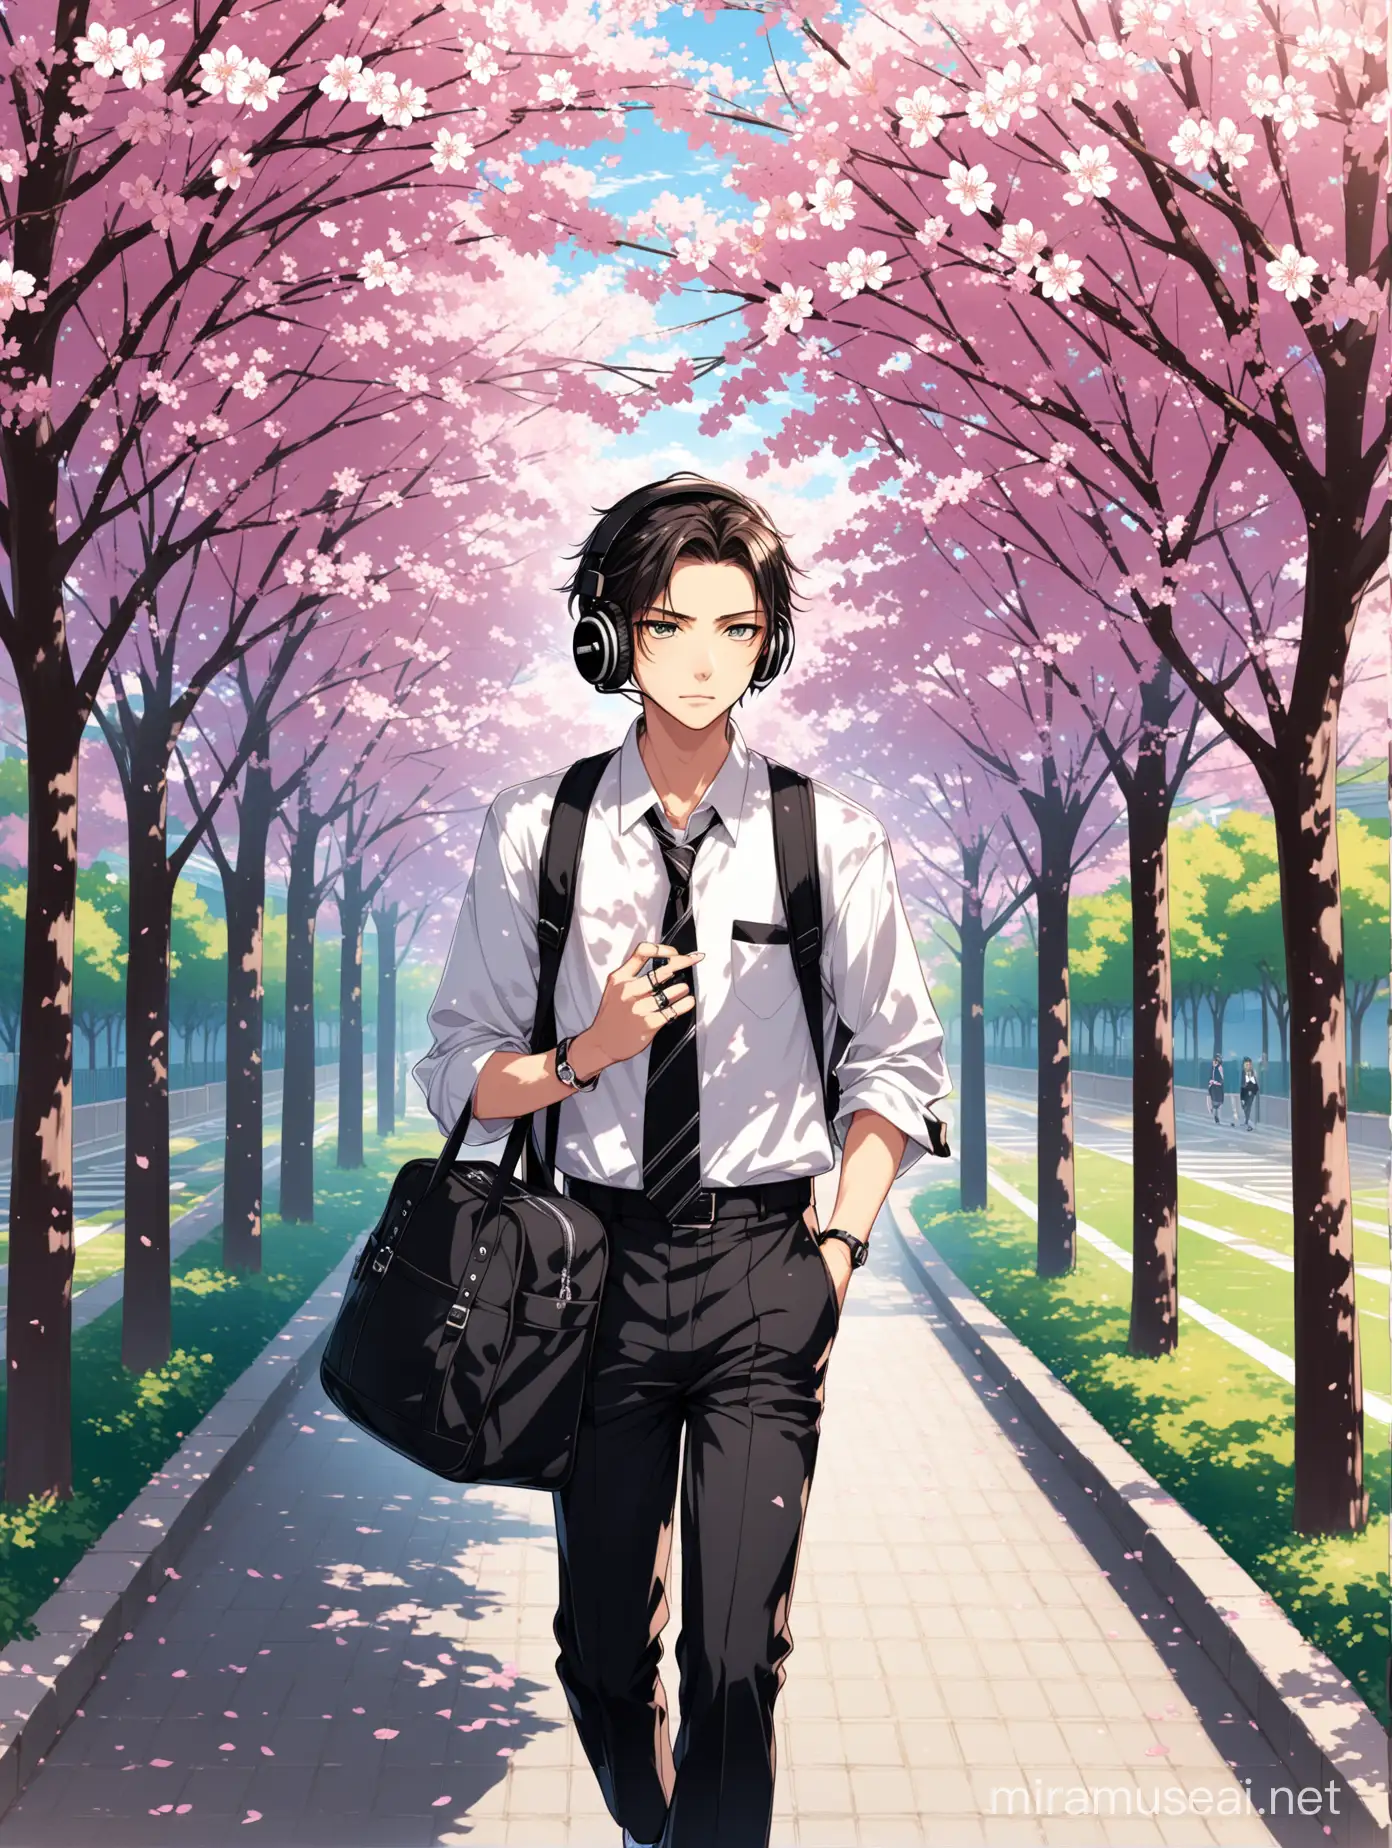 Mysterious Teenage Boy Walking Among Sakura Trees in Tokyo